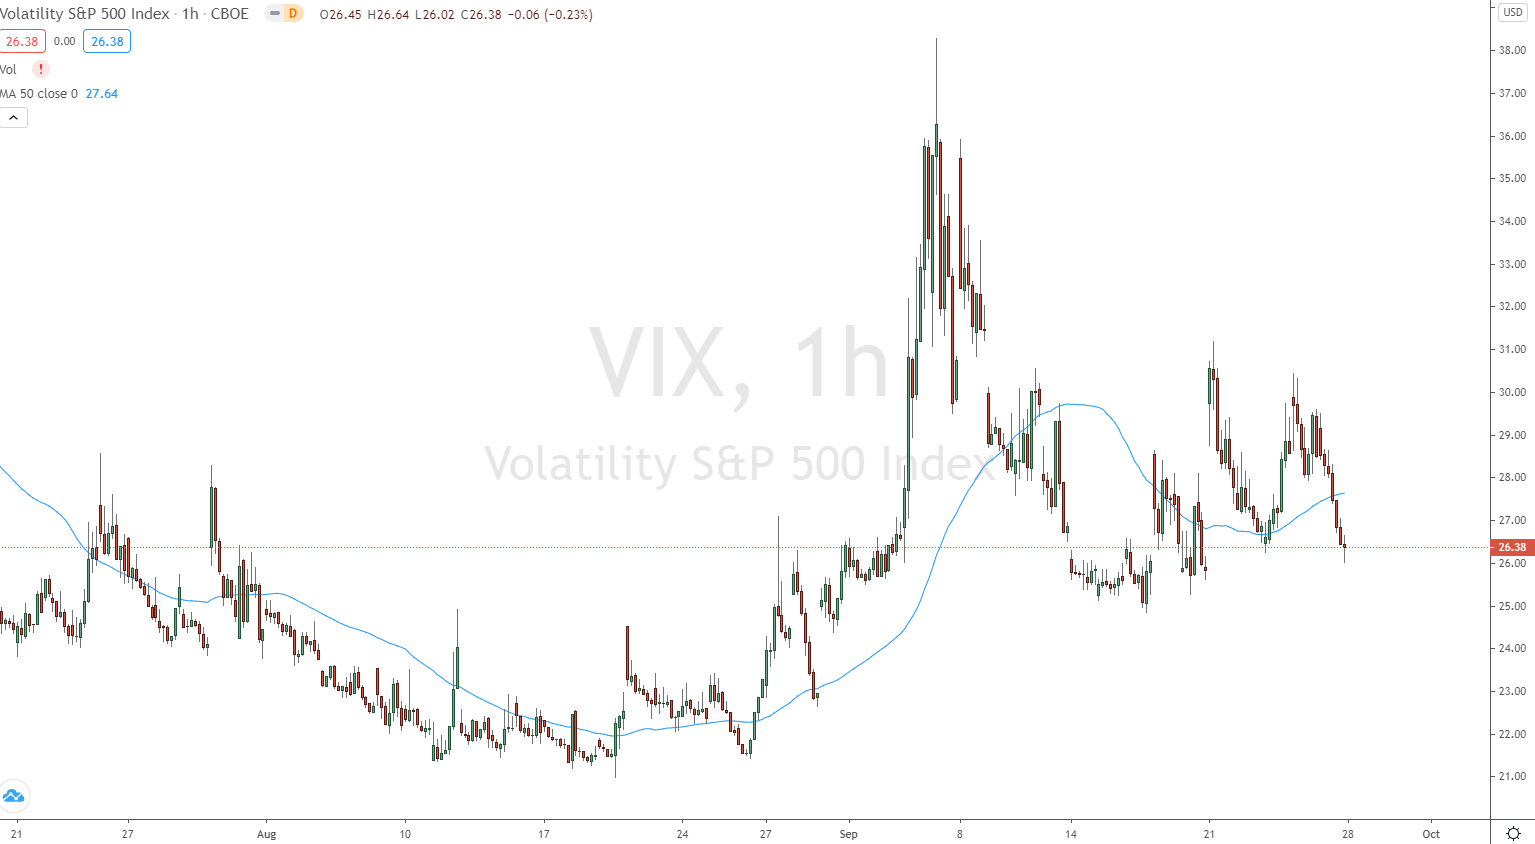 Der VIX zeigt die Volatilität des Markets